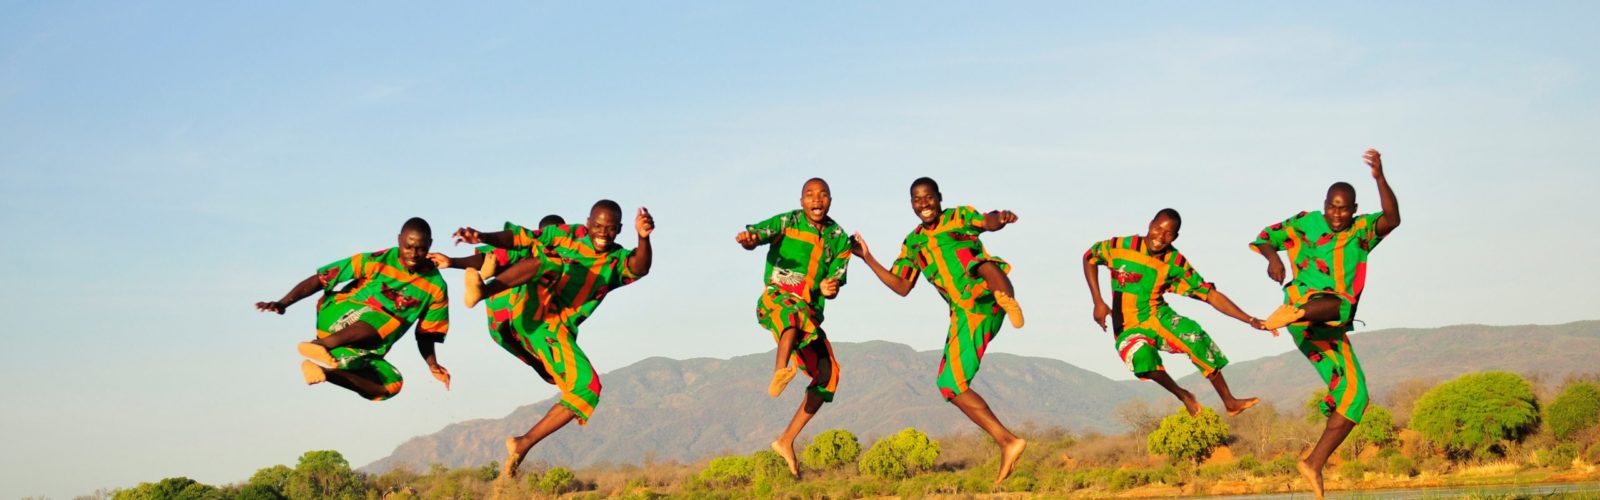 Men jumping Zambia